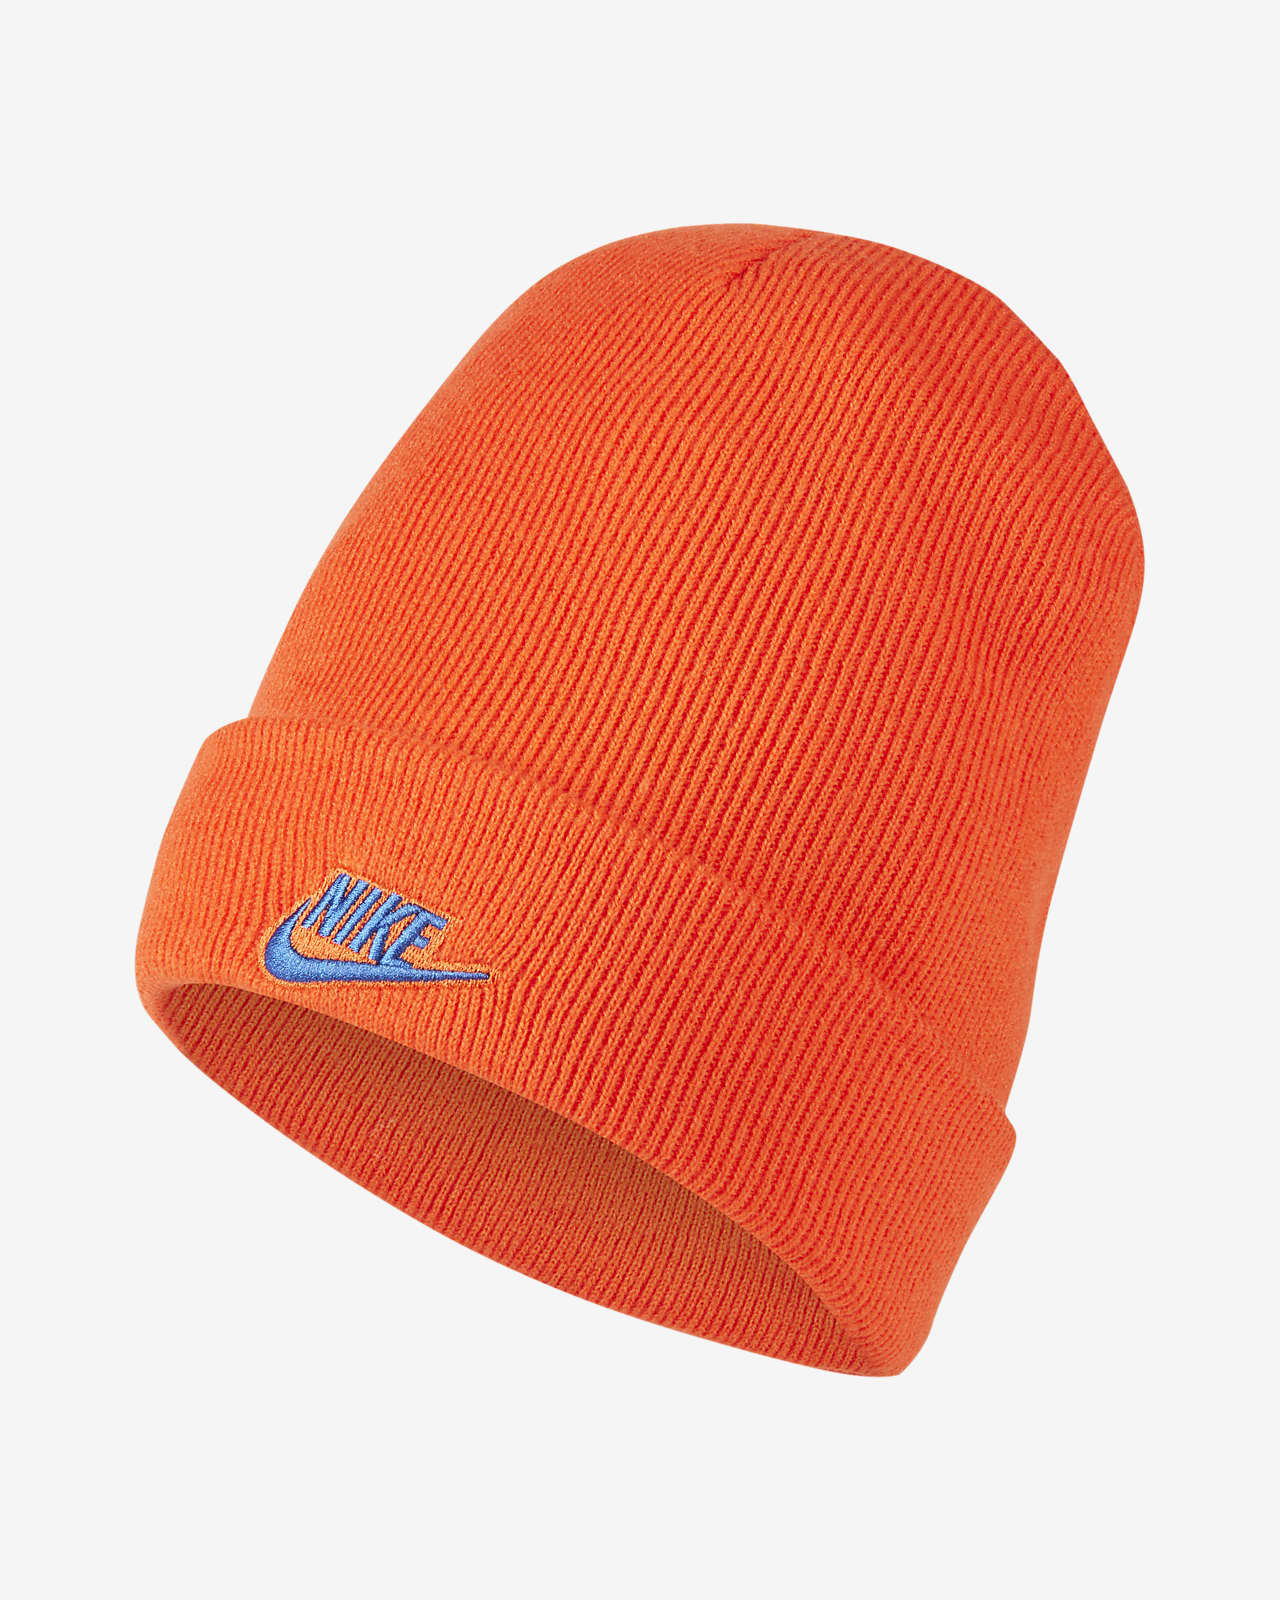 Nike Sportswear Utility Cuffed 针织帽